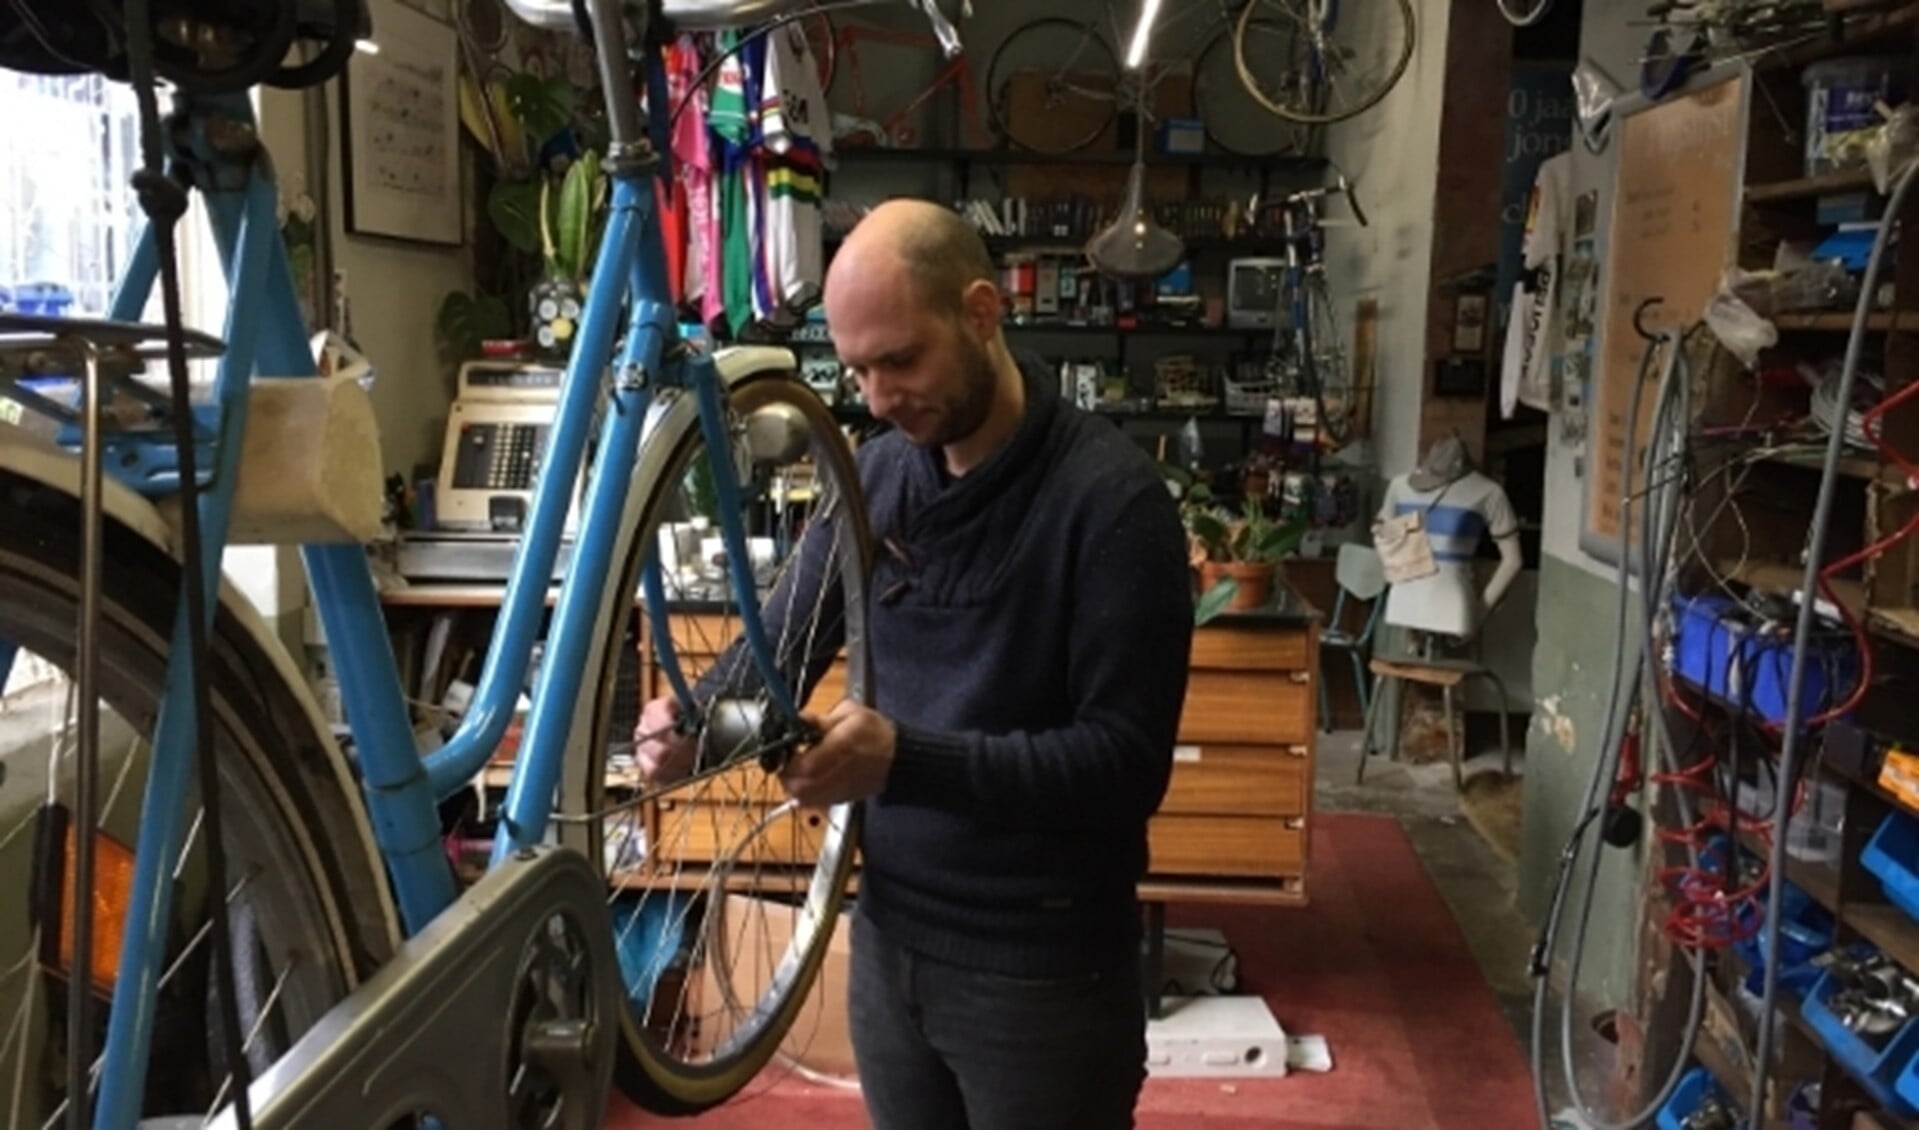 Theon aan het werk in zijn fietsenzaak op Strijp-S. De 35-jarige fietsenmaker is geboren en getogen in Woensel, maar woont momenteel in Valkenswaard.